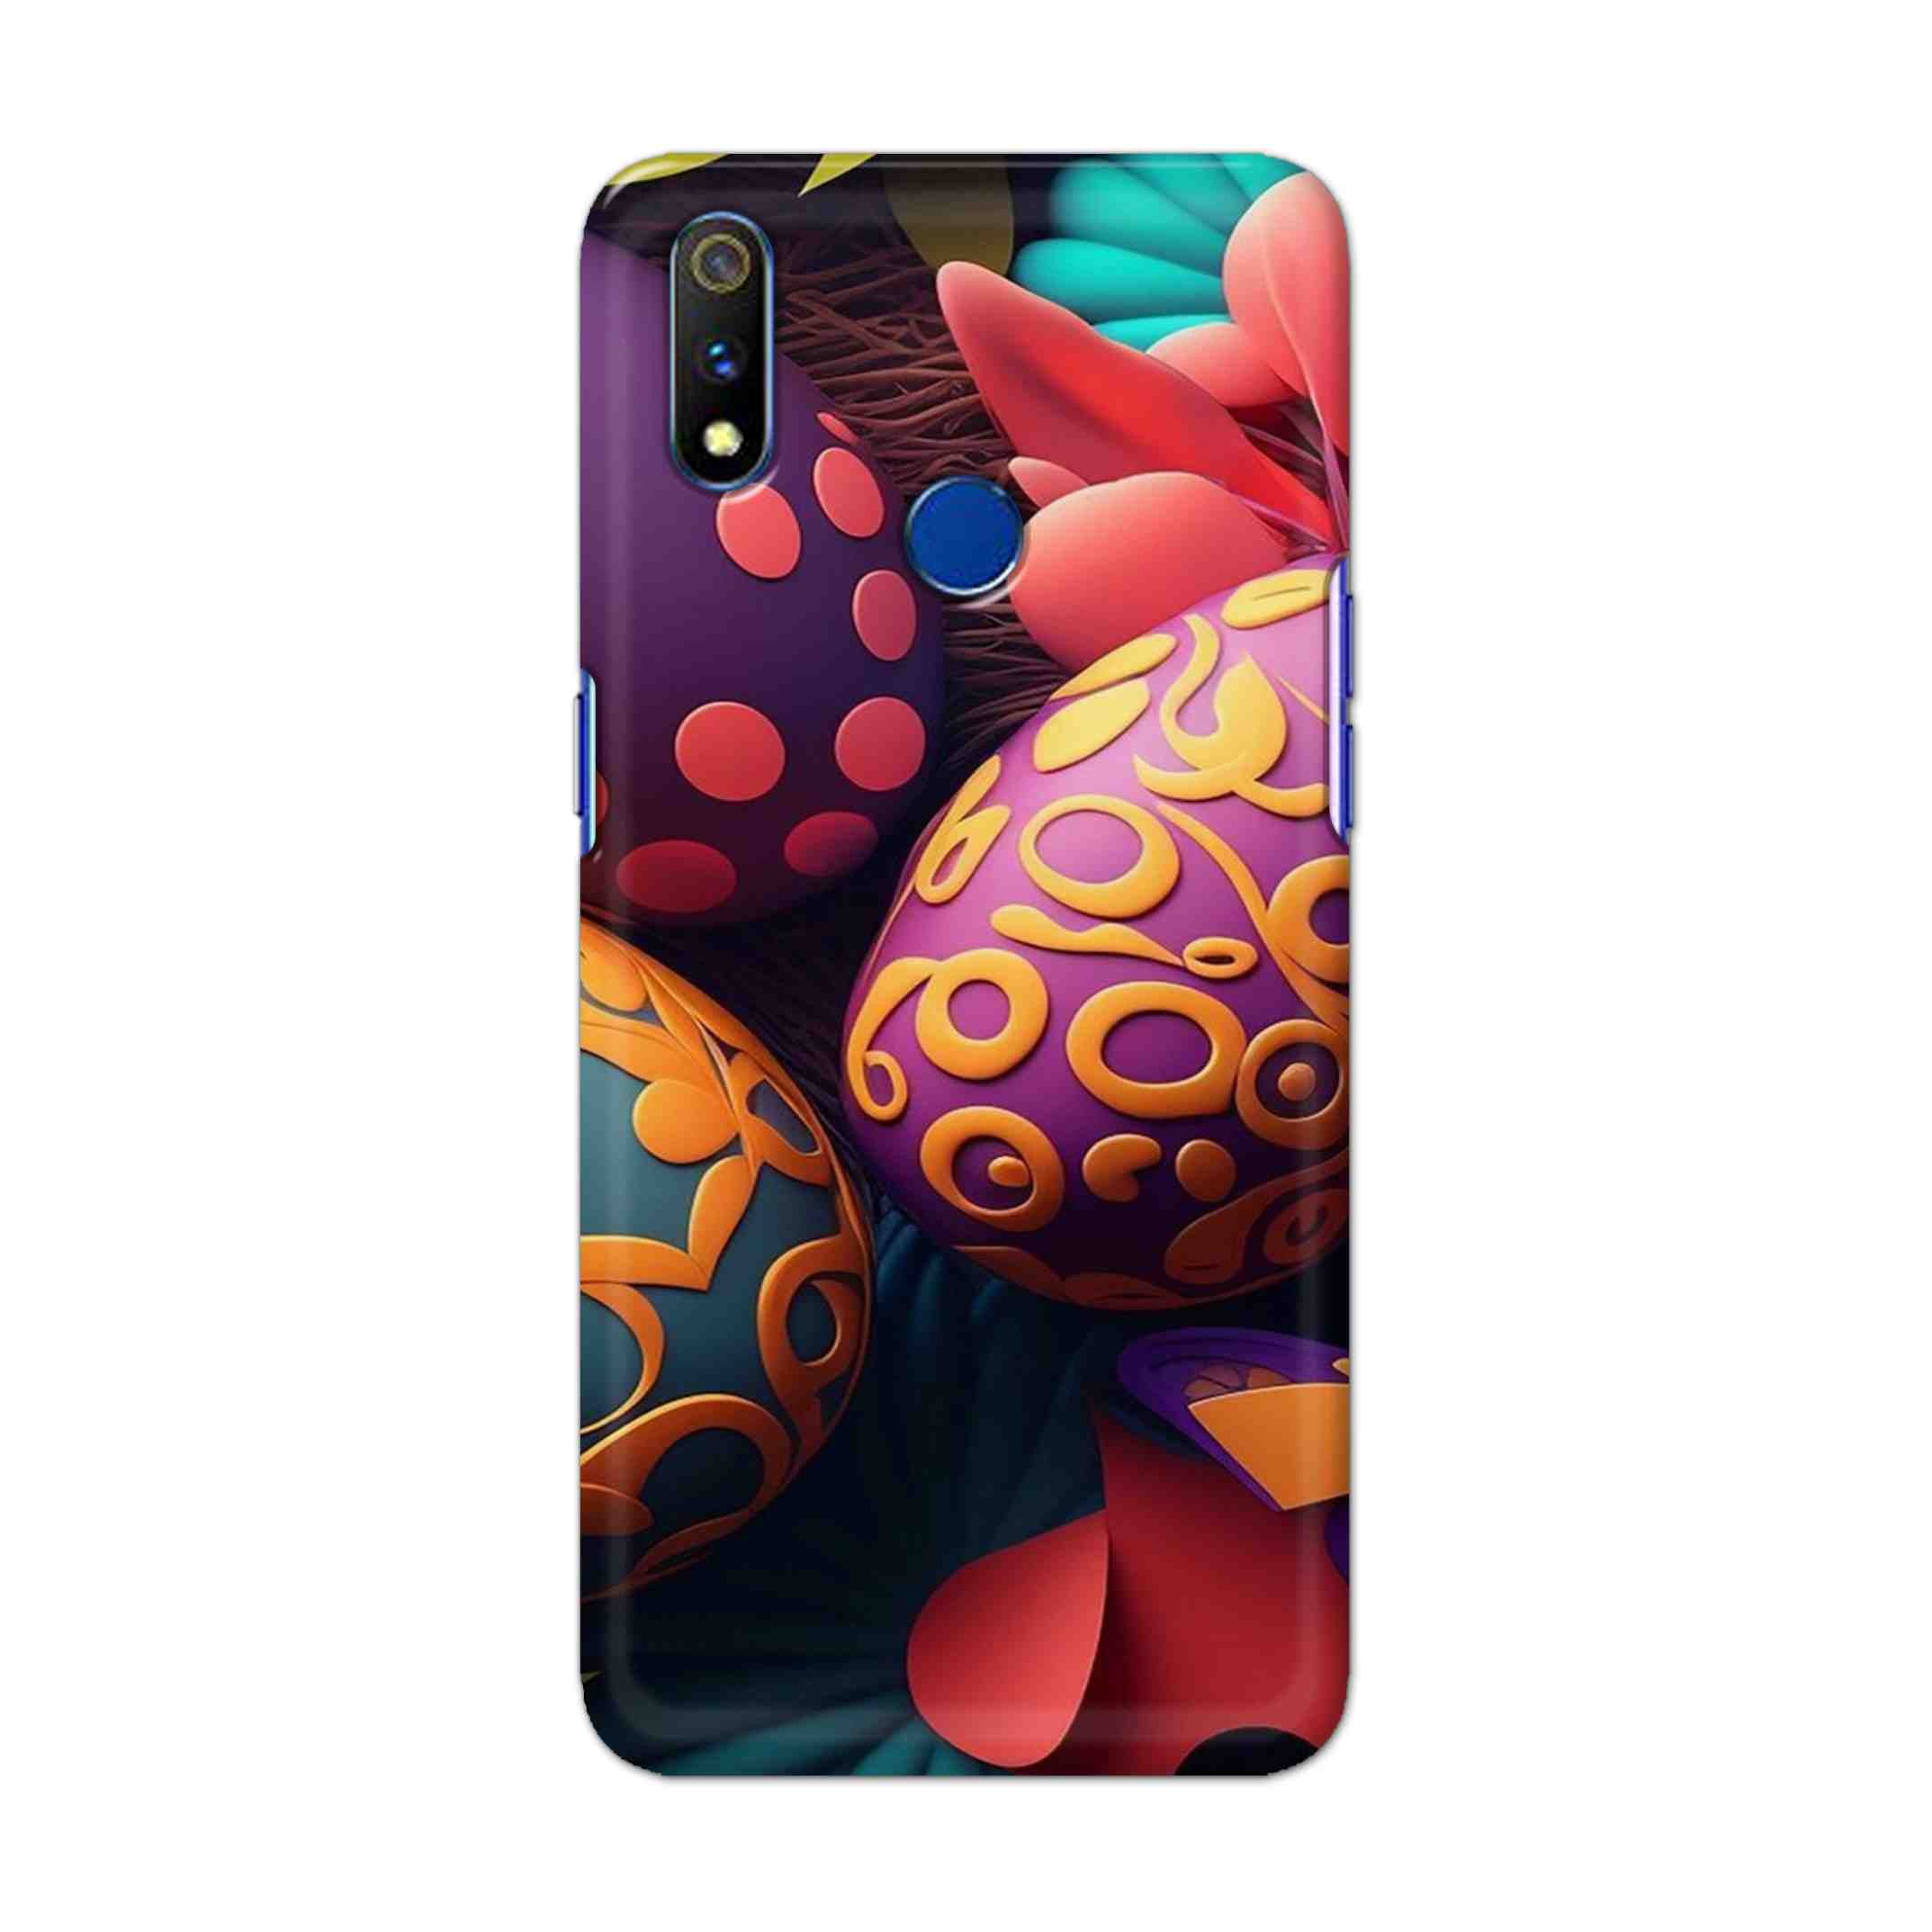 Buy Easter Egg Hard Back Mobile Phone Case Cover For Realme 3 Pro Online